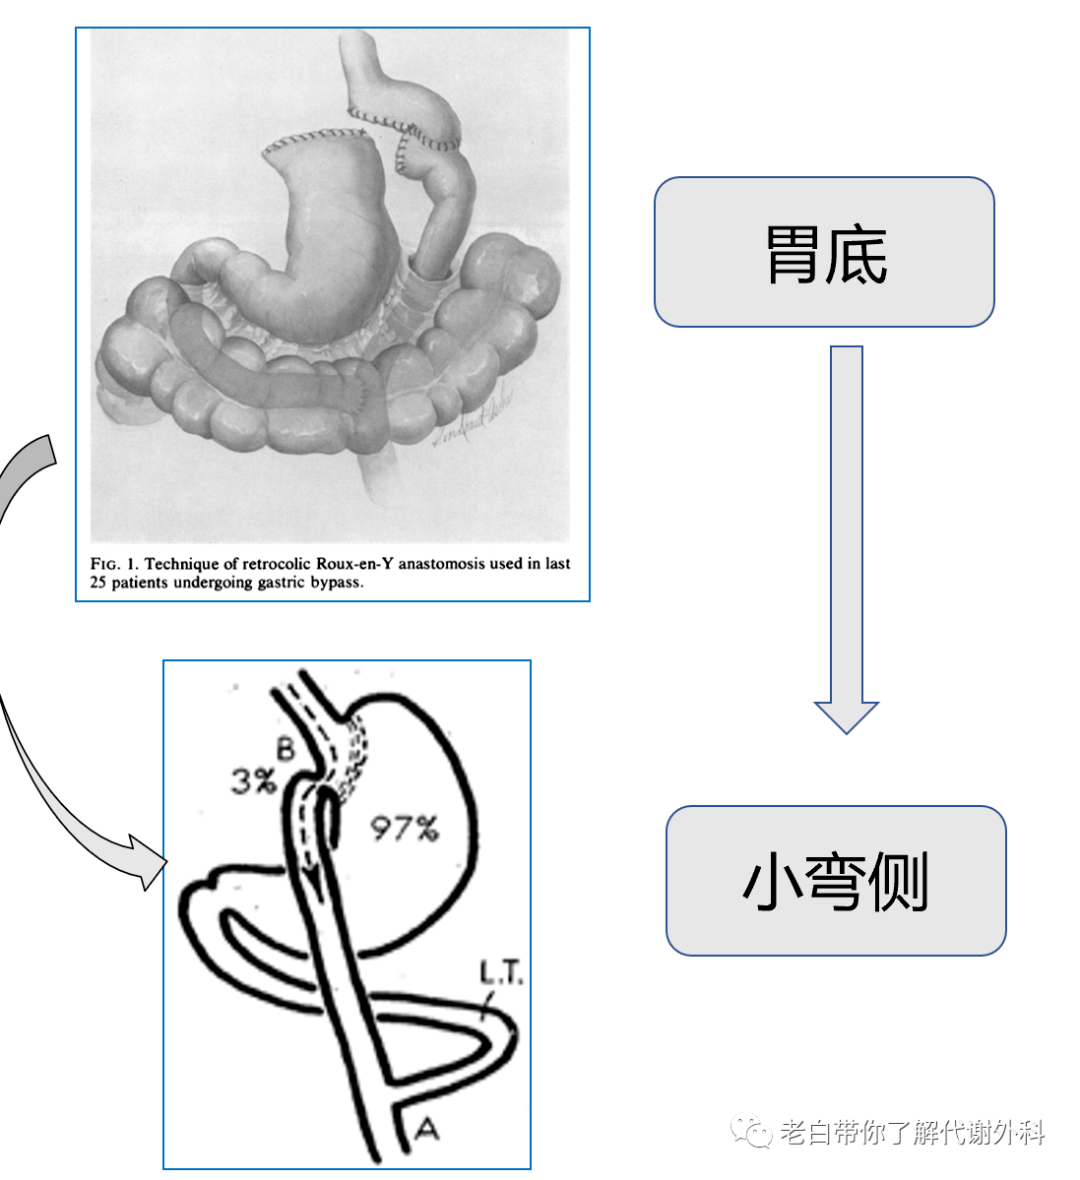 一图读懂——胃食管反流病__中国医疗